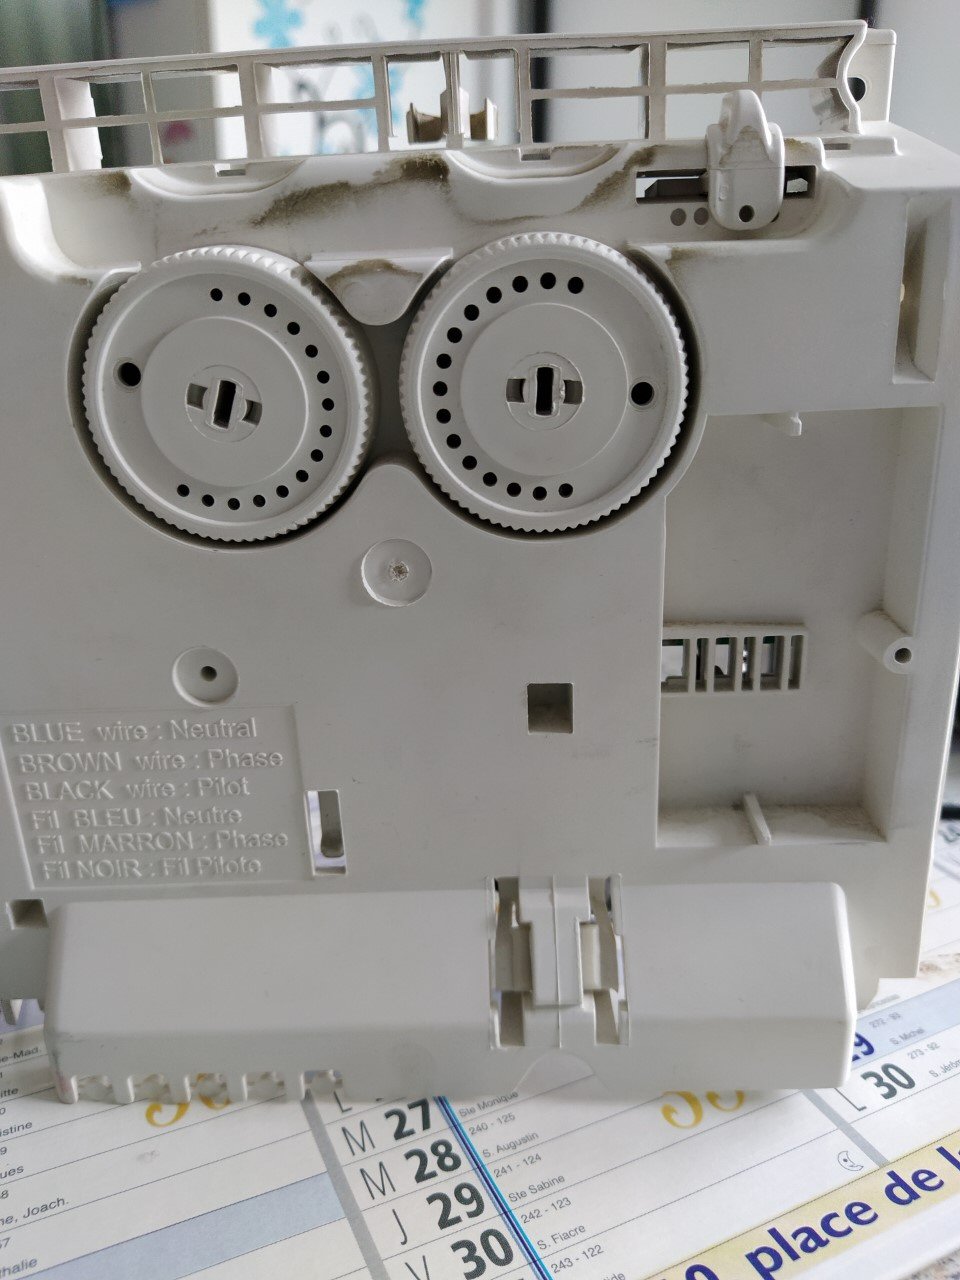 Les deux molettes de réglage du thermostat